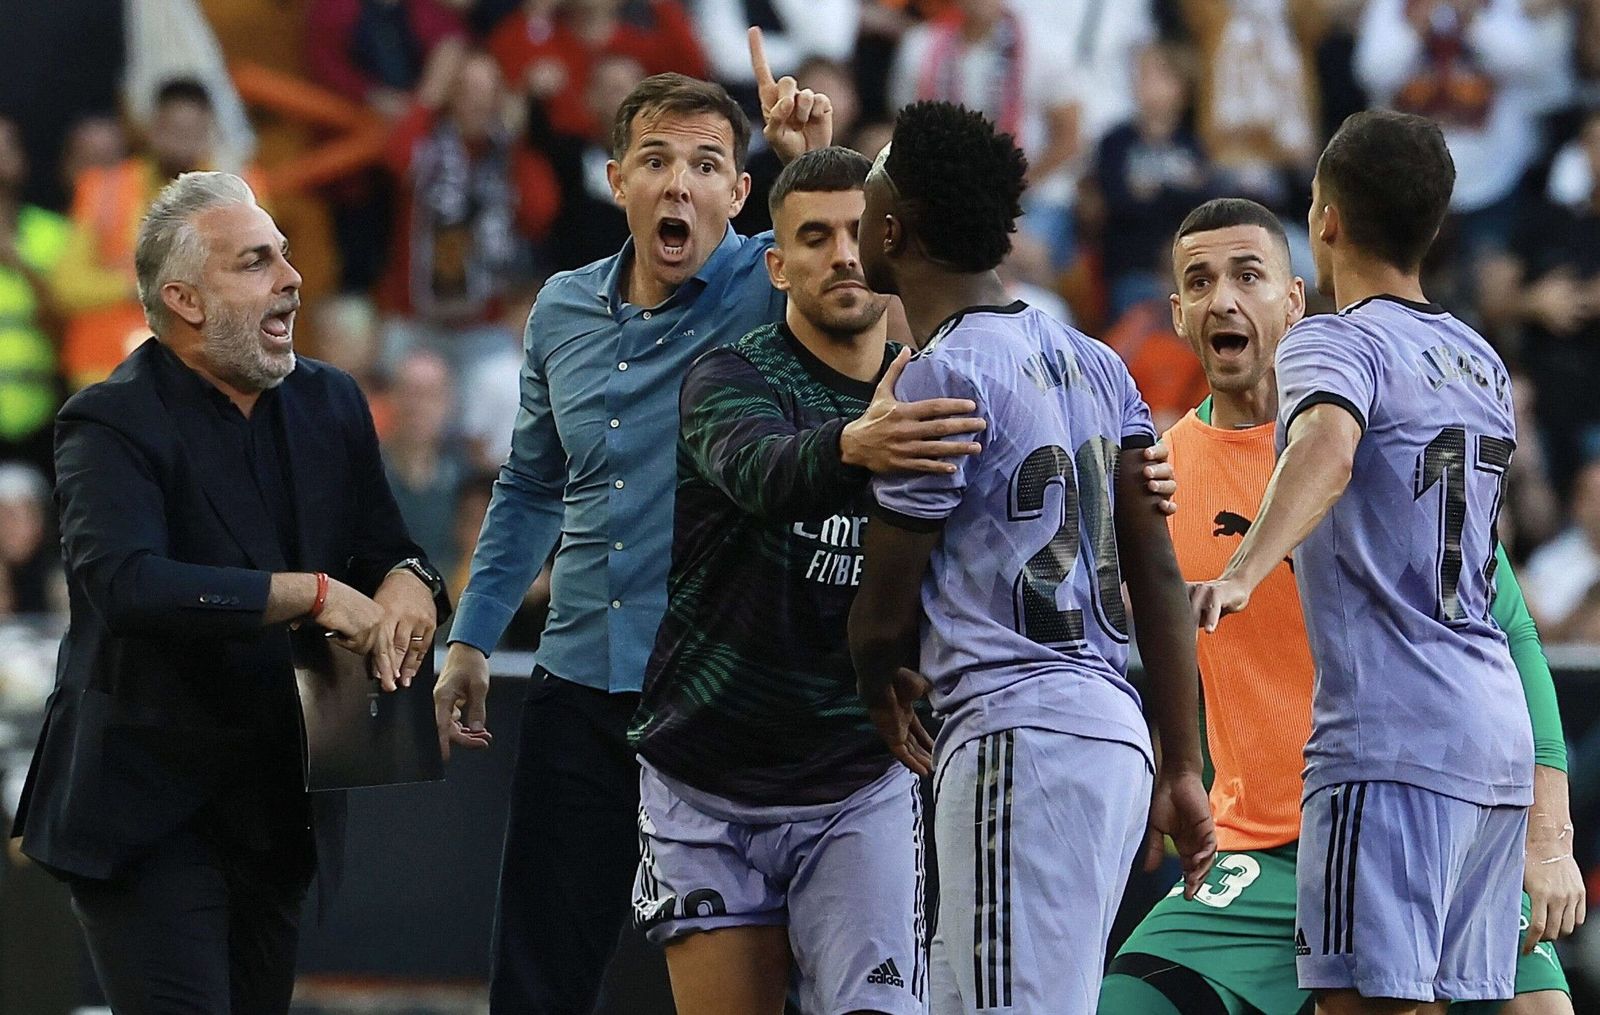 فينيسيوس جونيور يتعرض لهتافات عنصرية في مباراة ريال مدريد وفالنسيا على المستايا